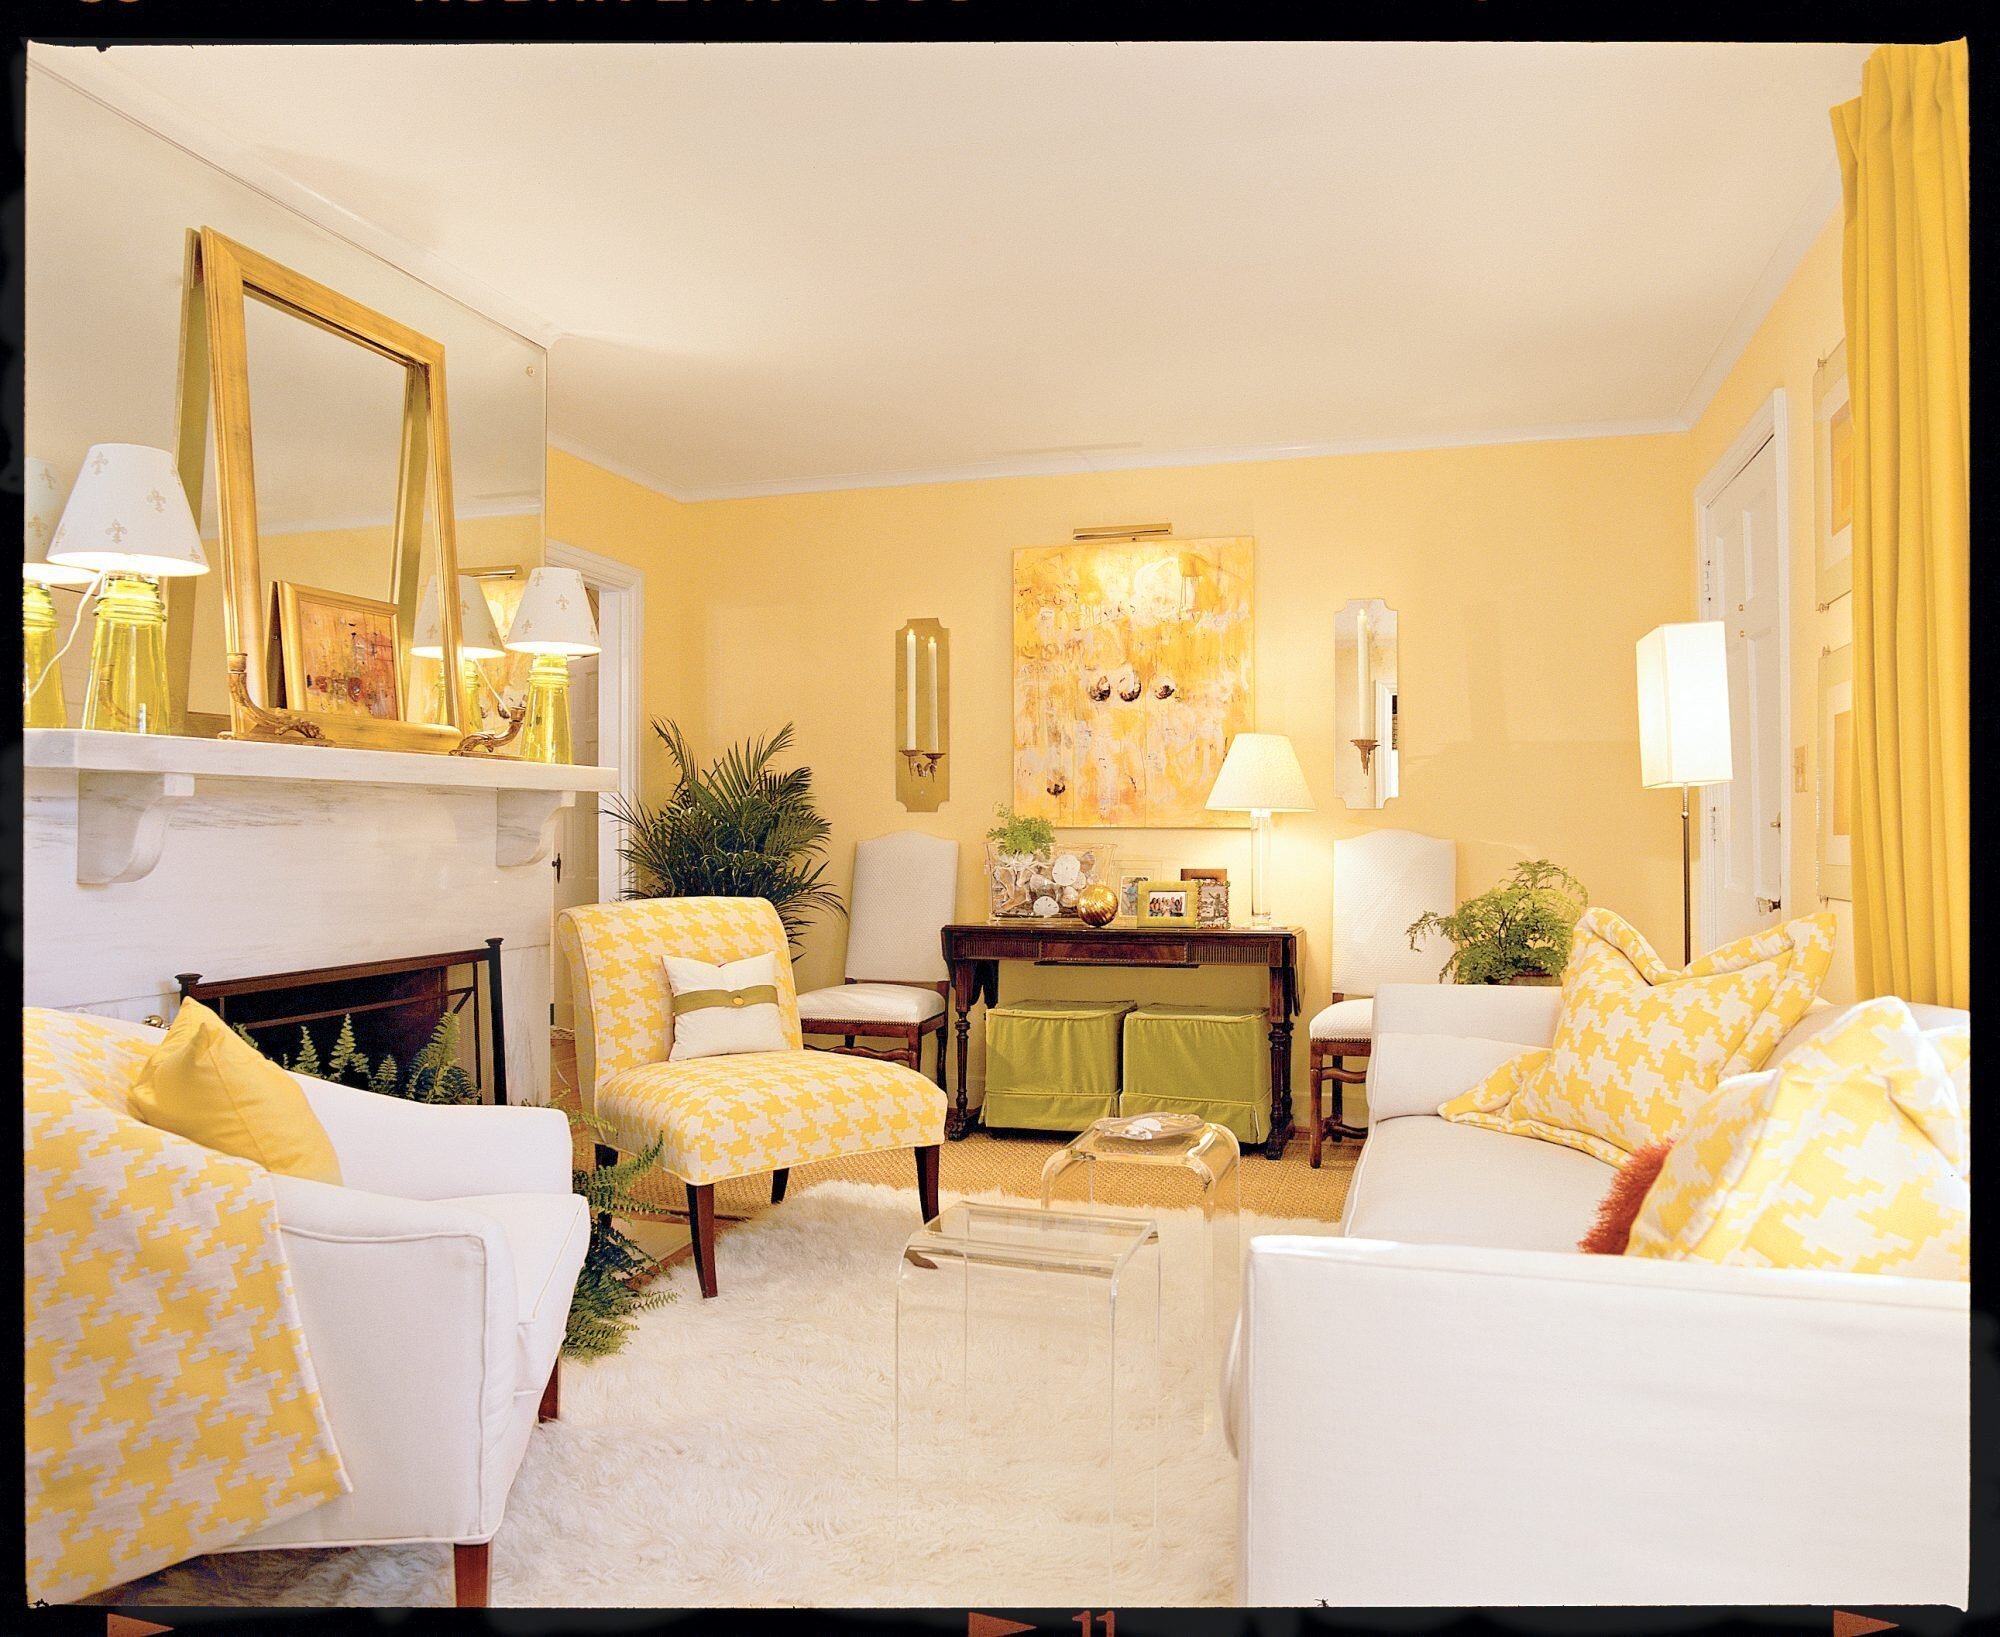 Обои желтые для стен: как выбрать нужный оттенок, как правильно поклеить без швов и подобрать сочетаемые стильные оттенки в маленькой или большой комнате